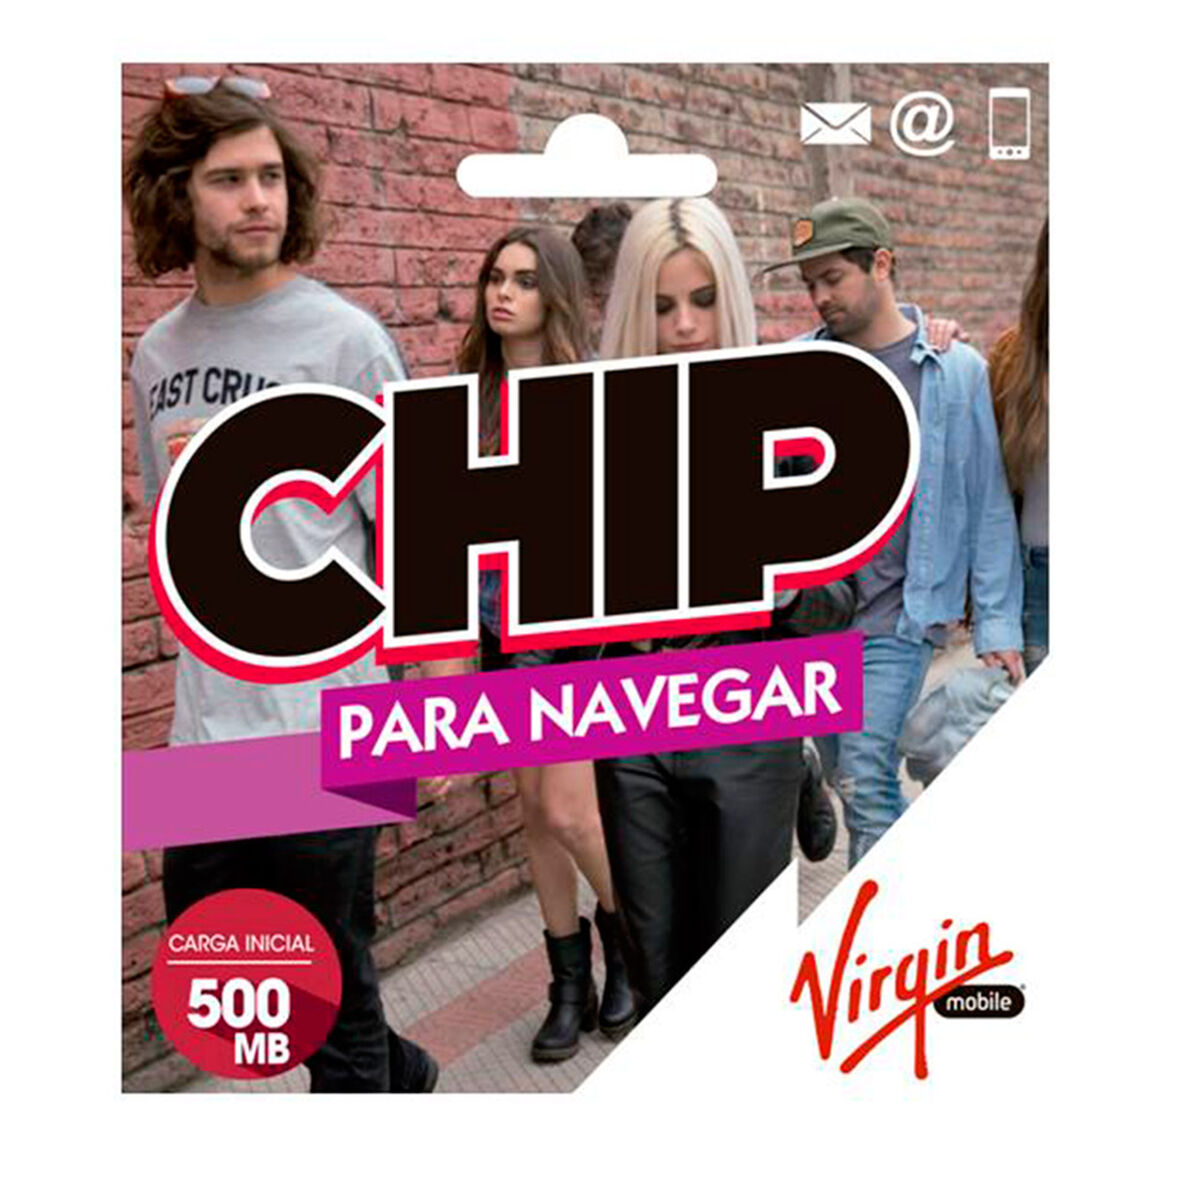 Chip Navegar Virgin 500 MB